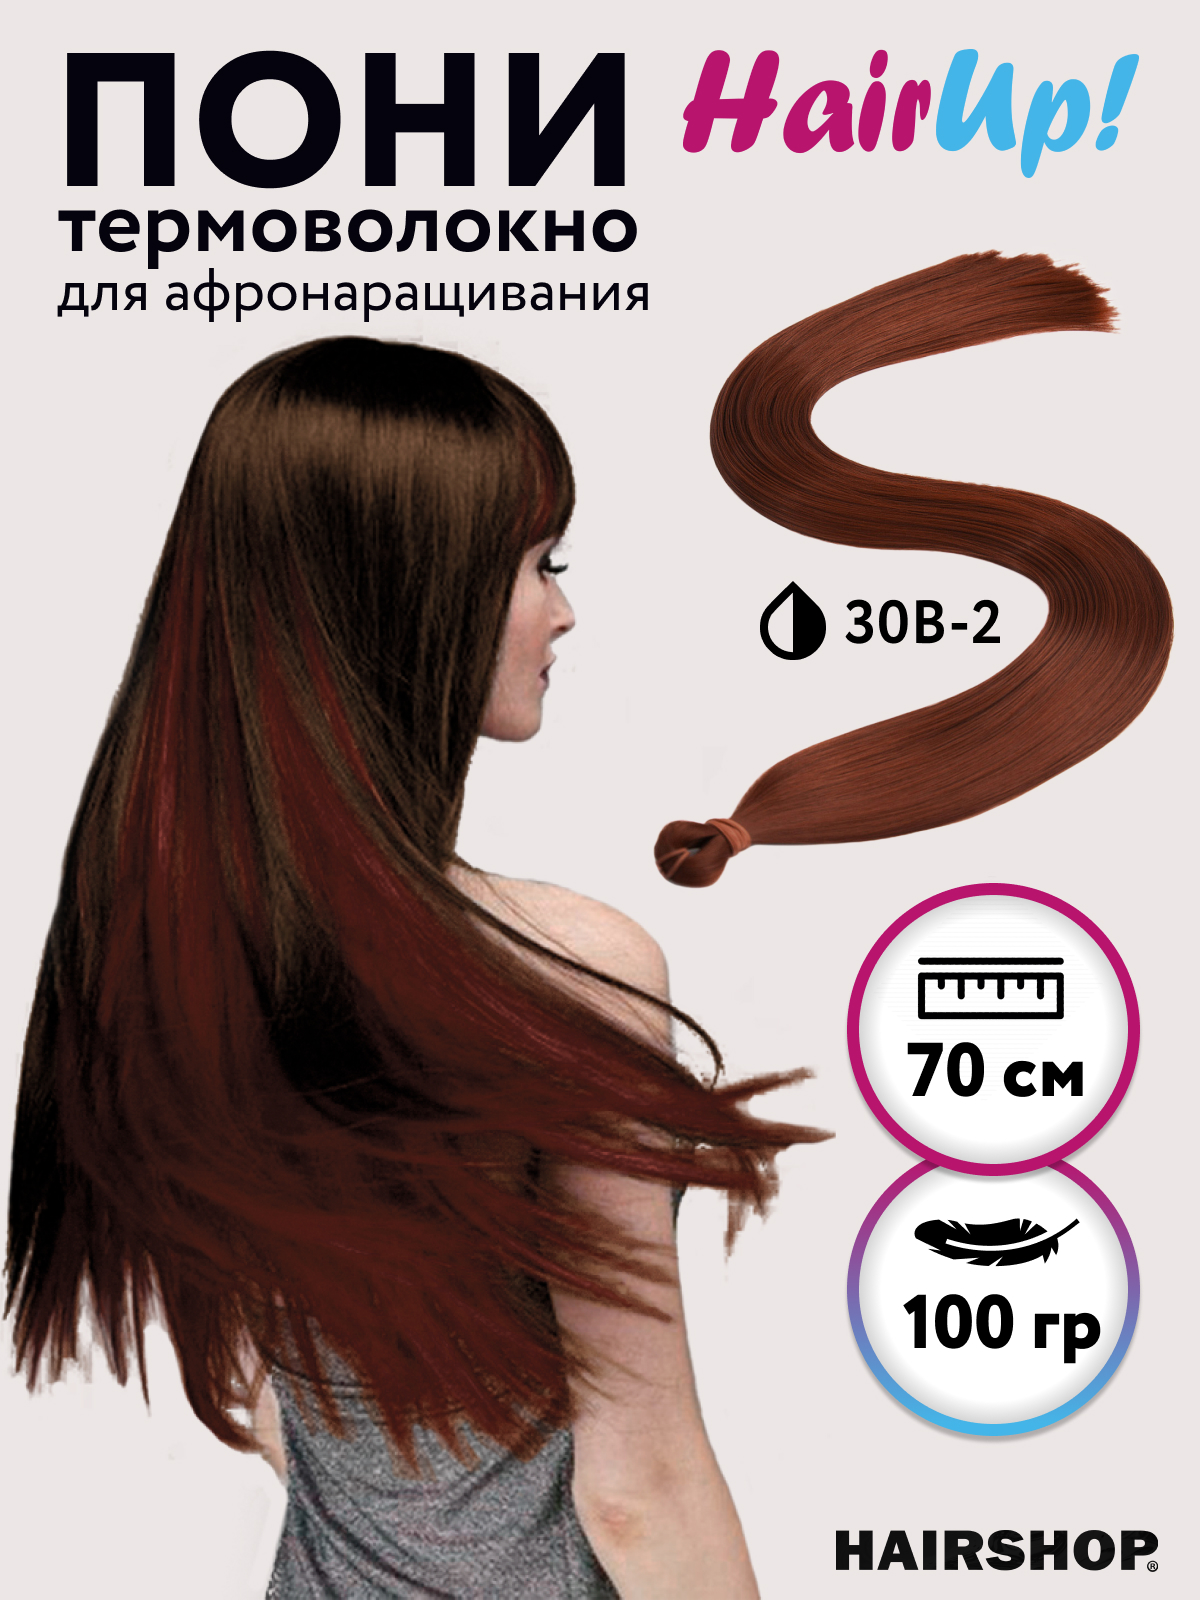 Канекалон Hairshop Пони HairUp для точечного афронаращивания прямые 30B-2 1,4м 100г канекалон hairshop пони hairup для точечного афронаращивания 135s красно рыжий 1 4м